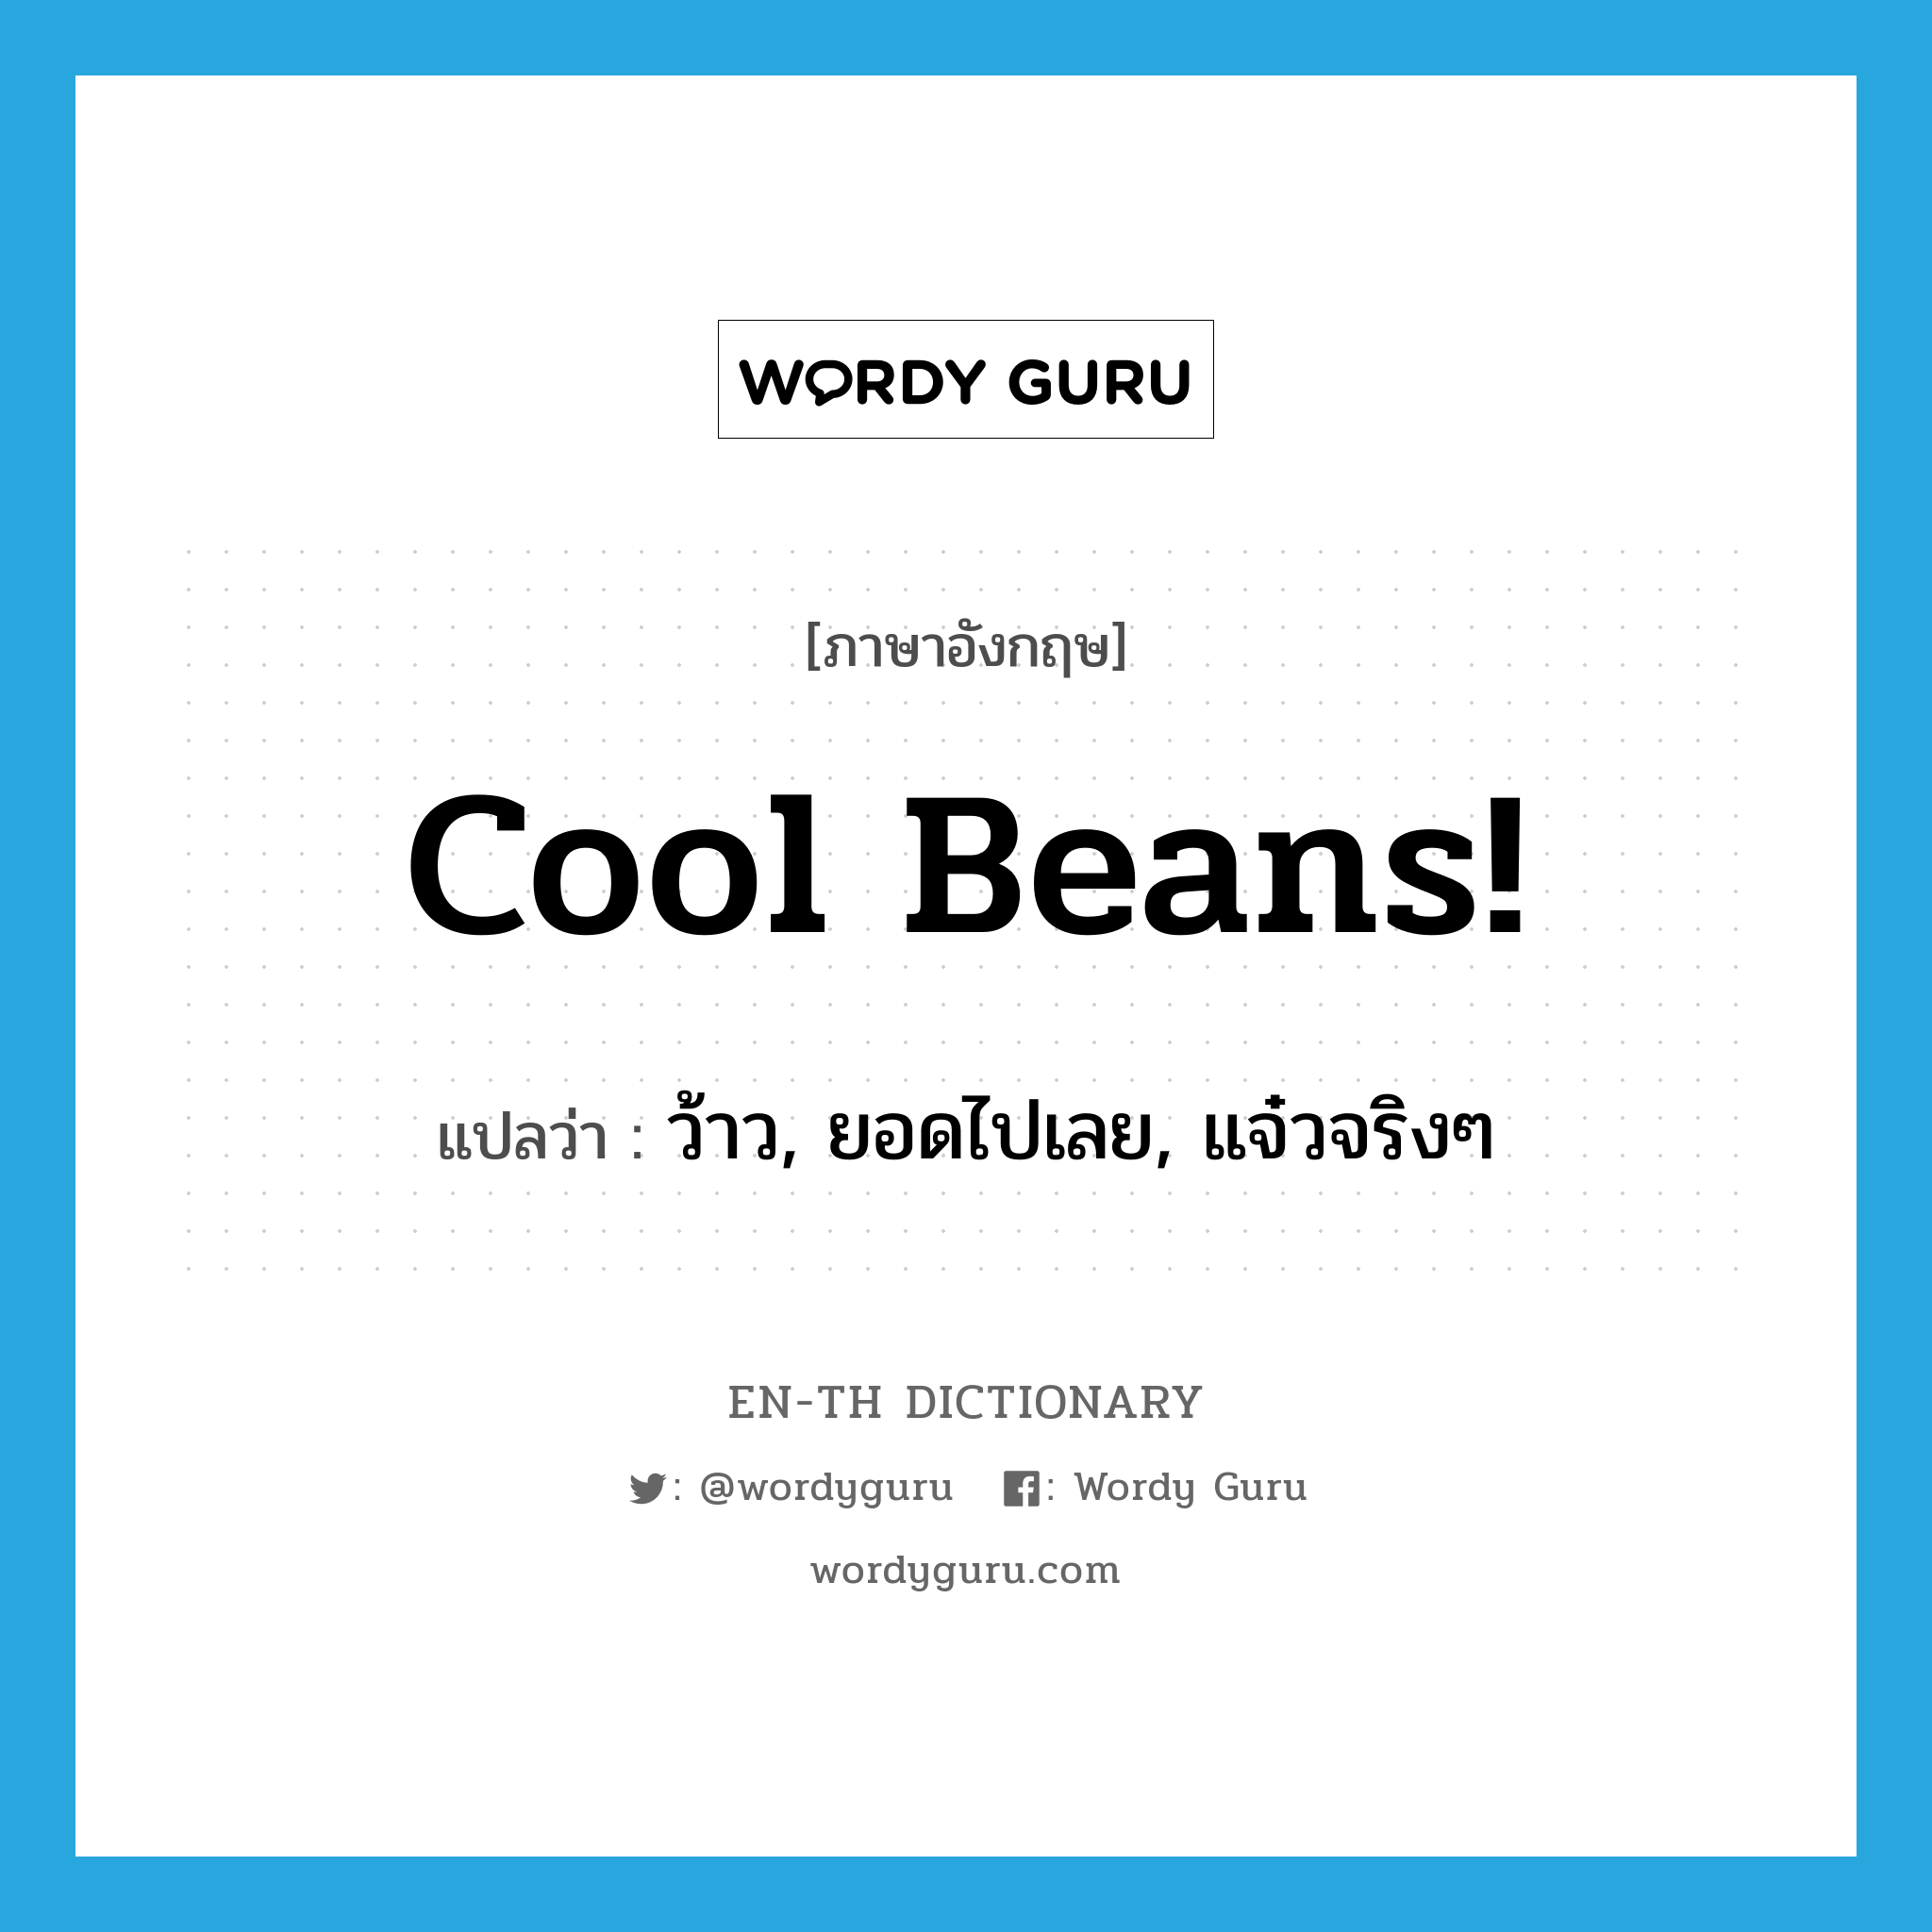 ว้าว, ยอดไปเลย, แจ๋วจริงๆ ภาษาอังกฤษ?, คำศัพท์ภาษาอังกฤษ ว้าว, ยอดไปเลย, แจ๋วจริงๆ แปลว่า Cool beans! ประเภท SL หมวด SL